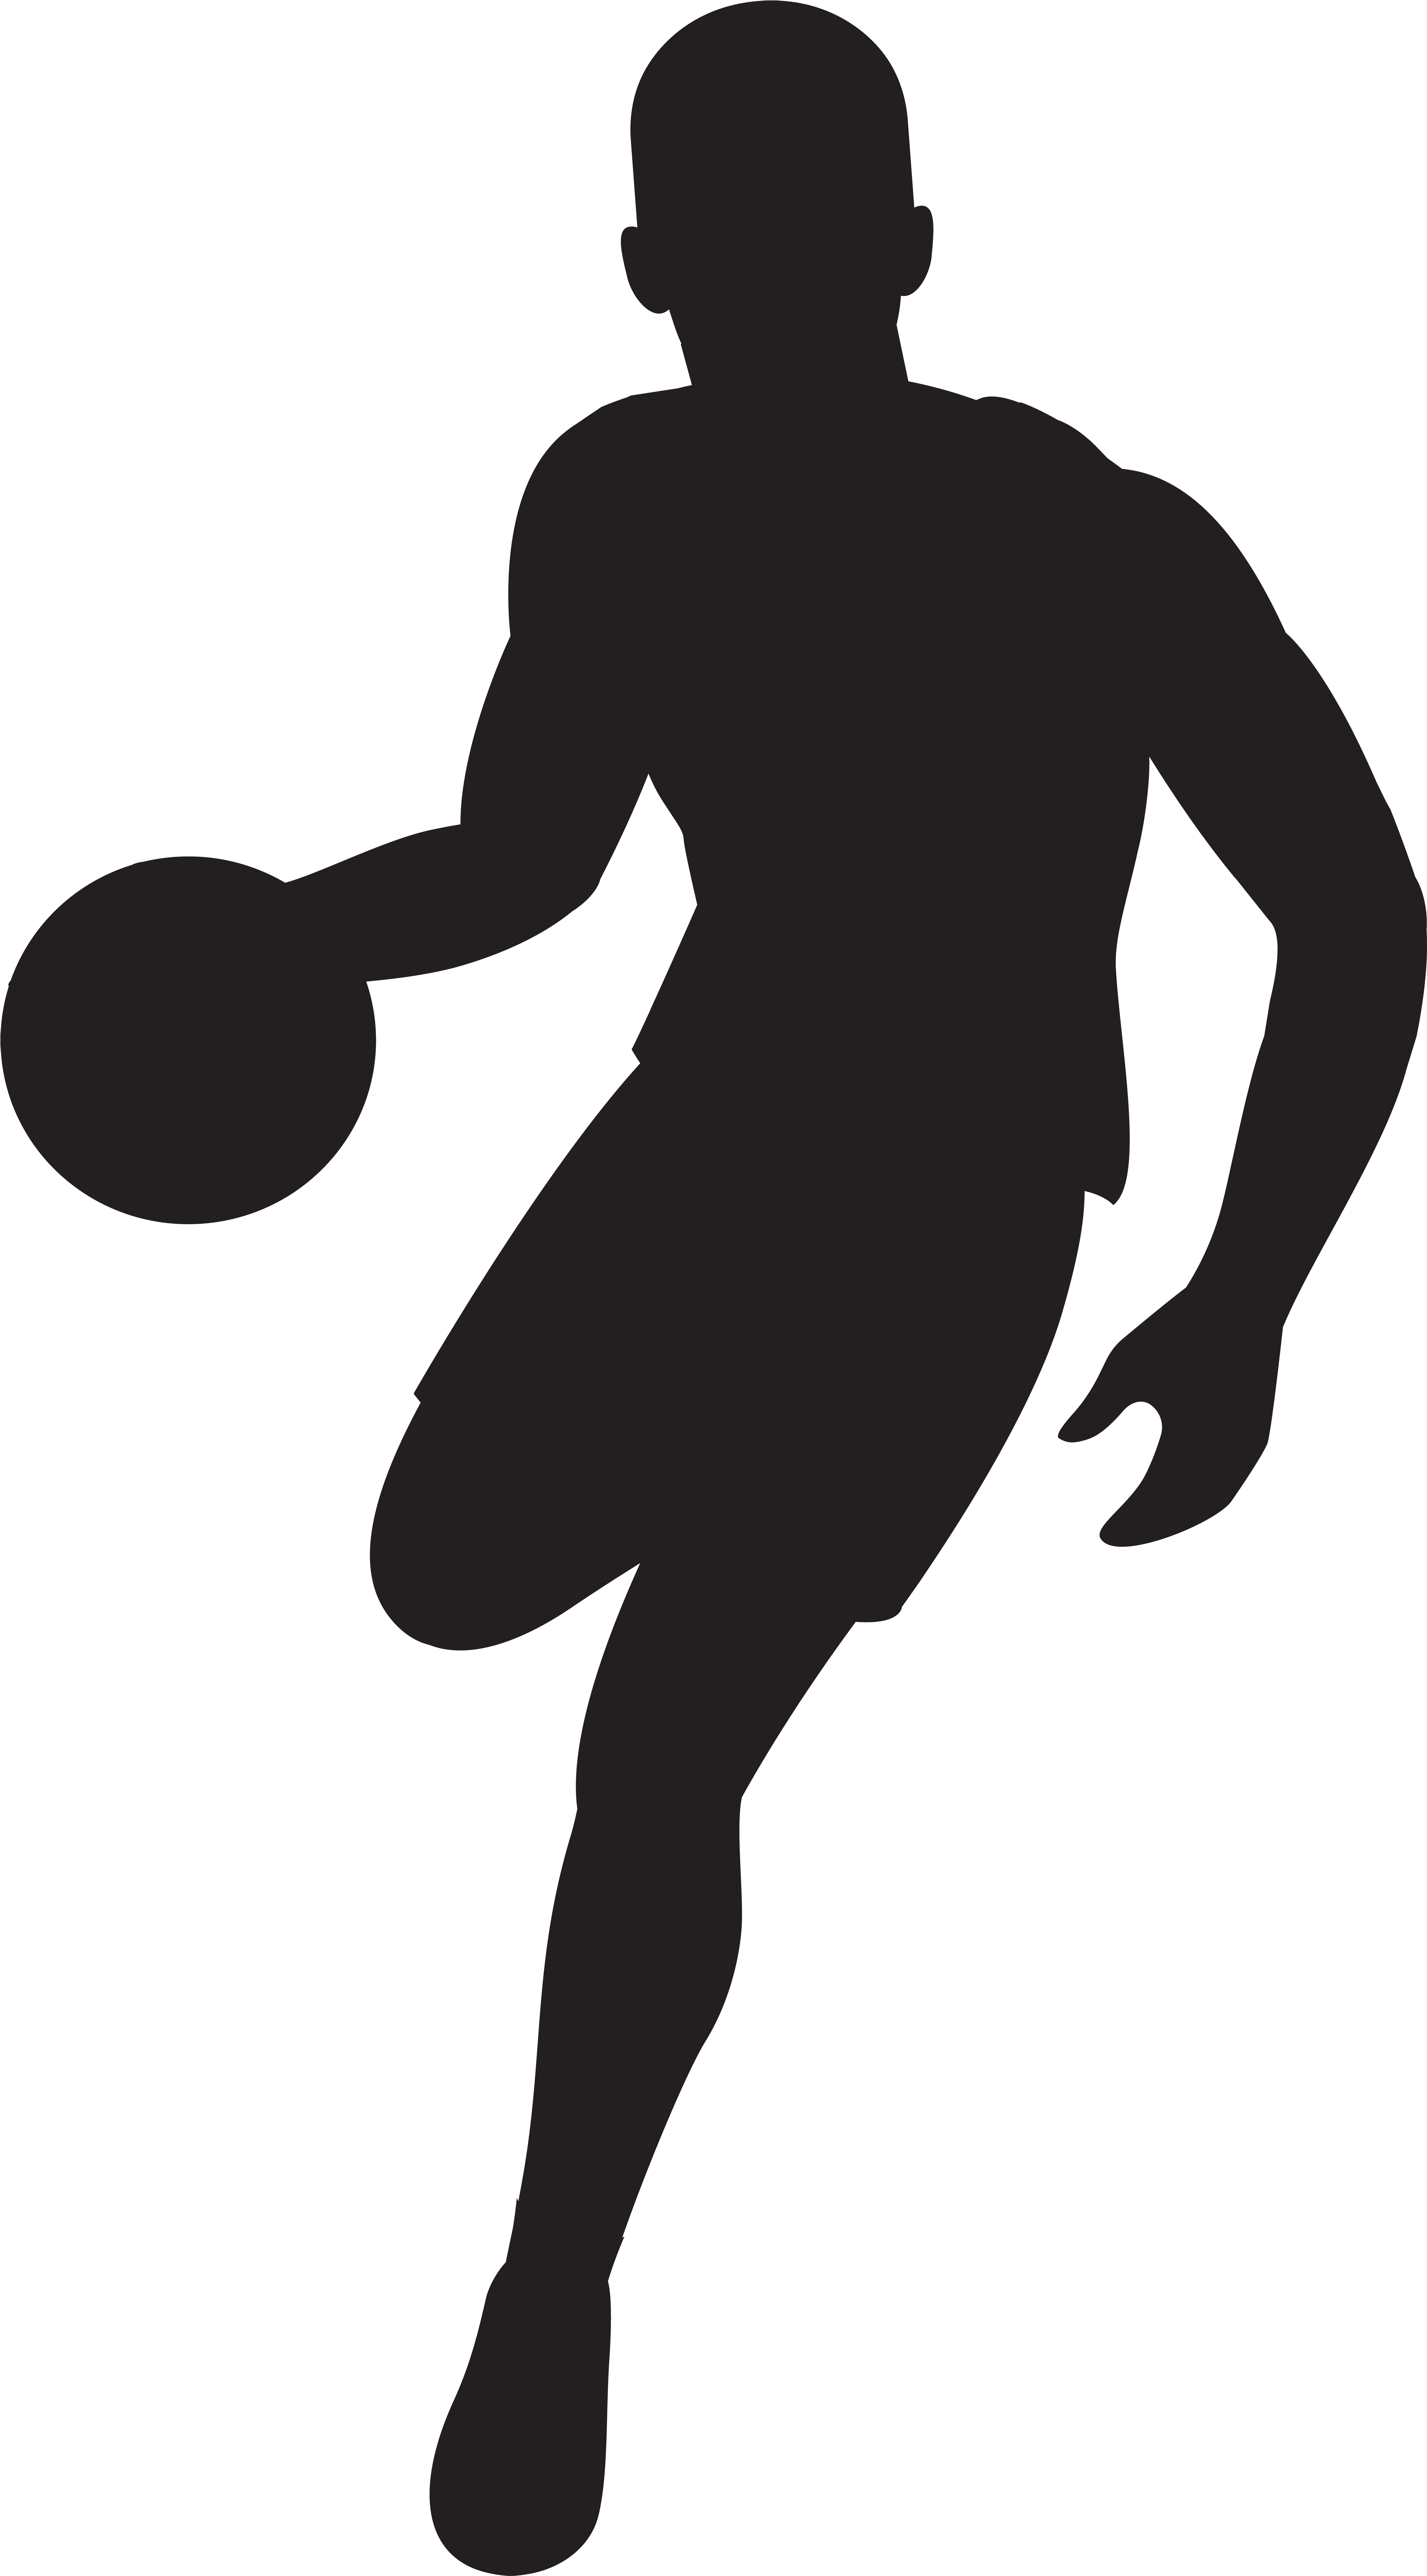 Basketball Player Silhouette Clip Art Imageu200b Gallery - Basketball Player Silhouette Free (4529x8000)